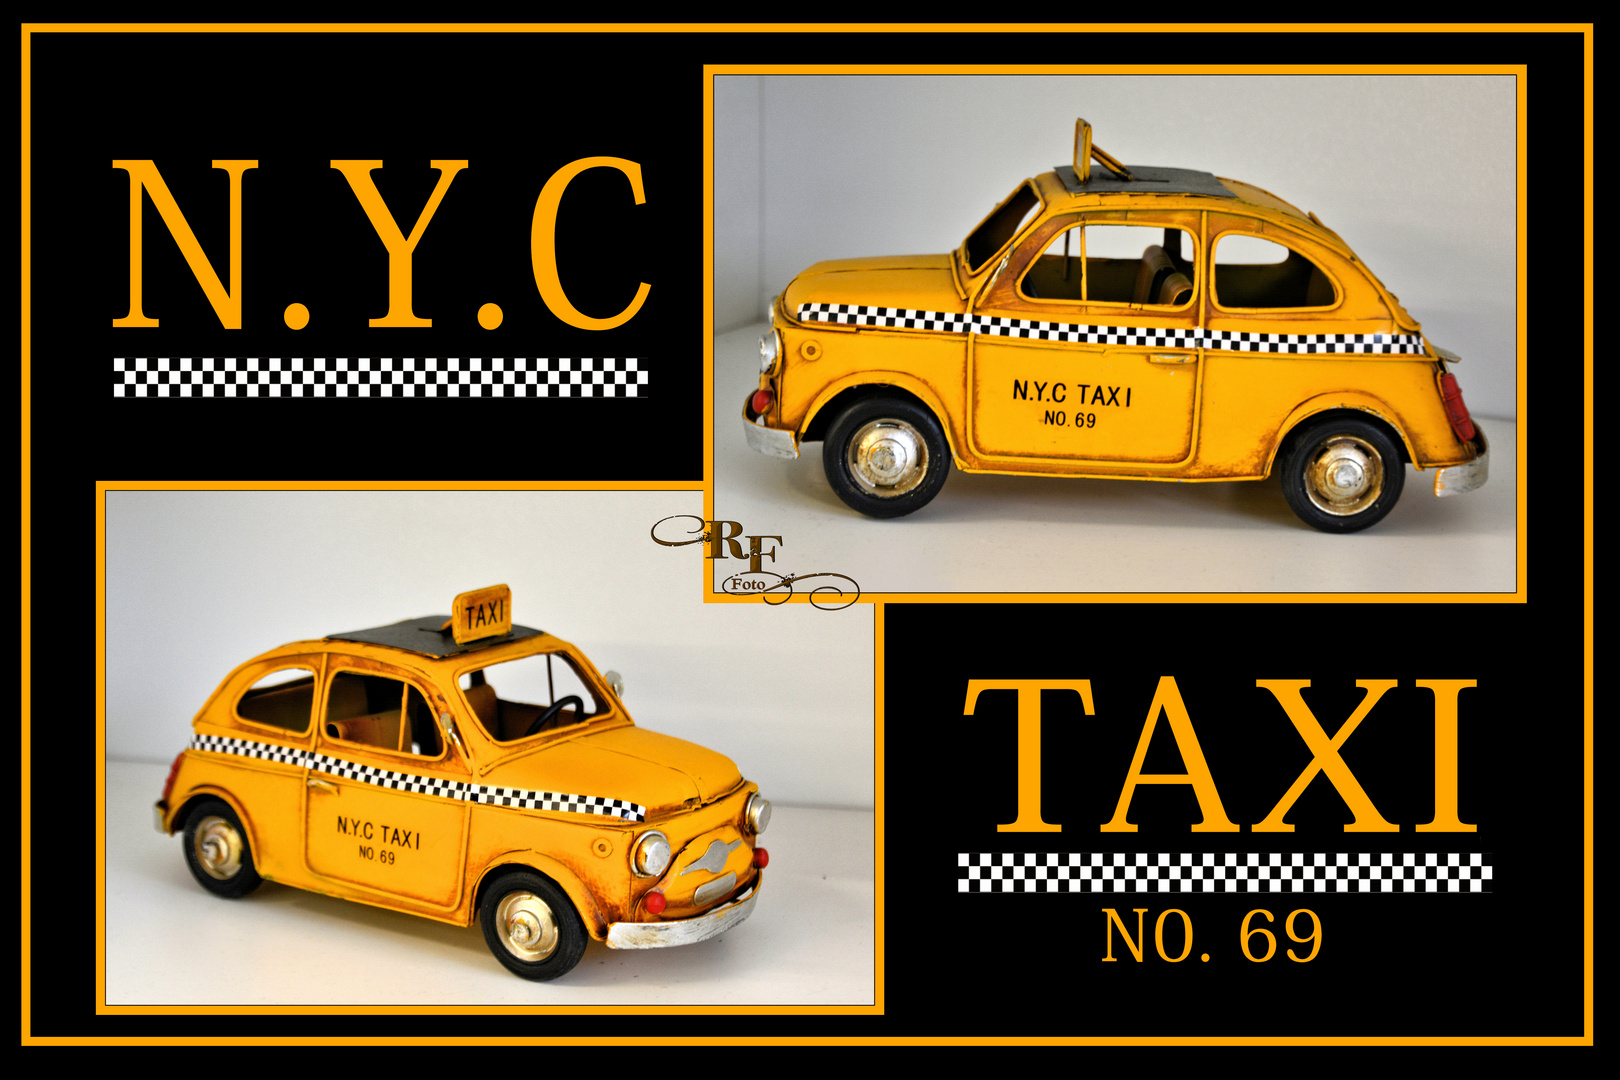 Samstag ist Zahl-Tag  -  Taxi Nr. 69